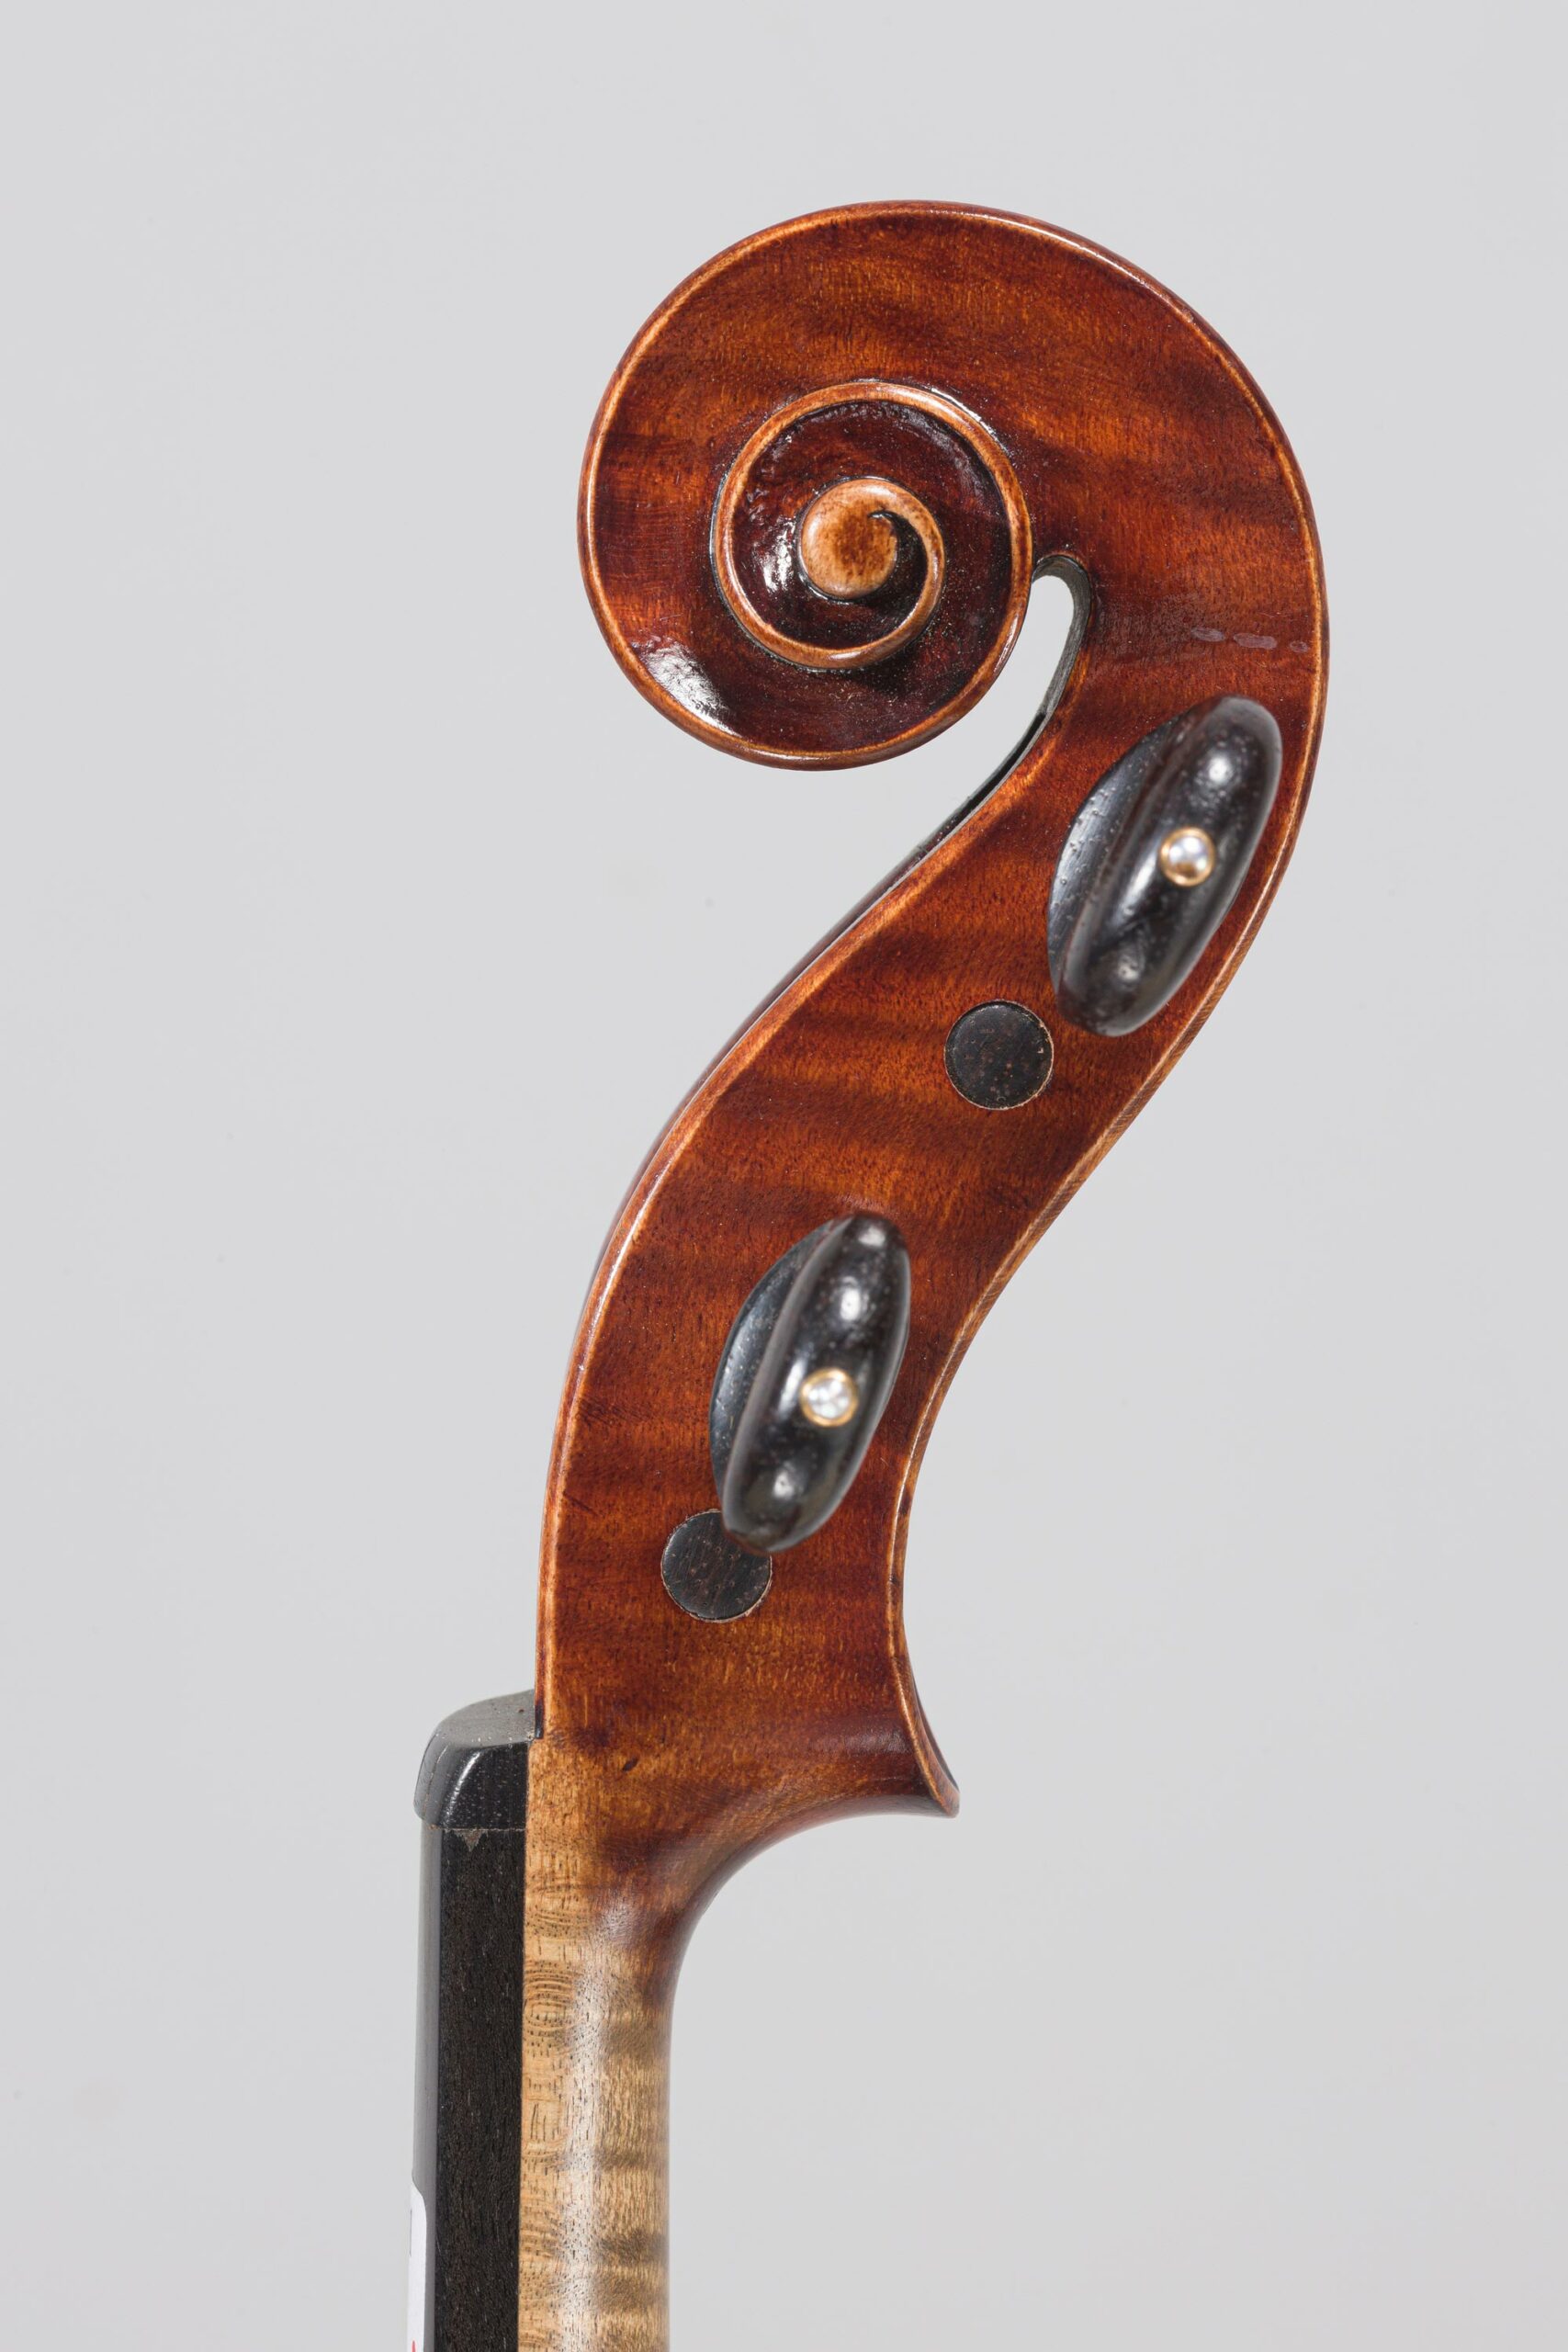 Lot 505 Violon de Lucien SCHMITT - Collection Calas Instrument mis en vente par Vichy Enchères le 30 novembre 2022 © C. Darbelet